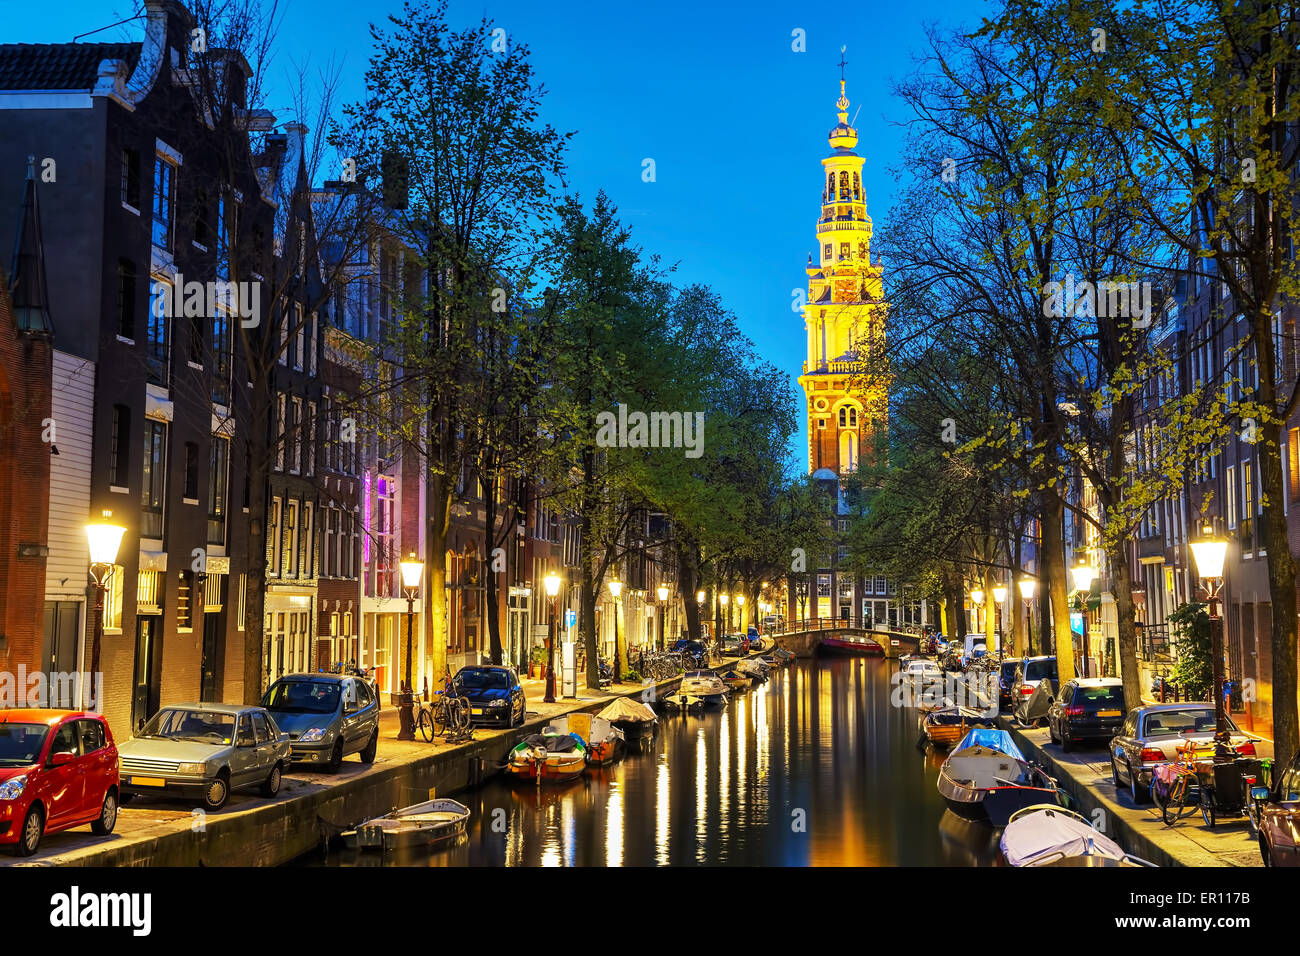 Zuiderkerk church in Amsterdam in the evening Stock Photo